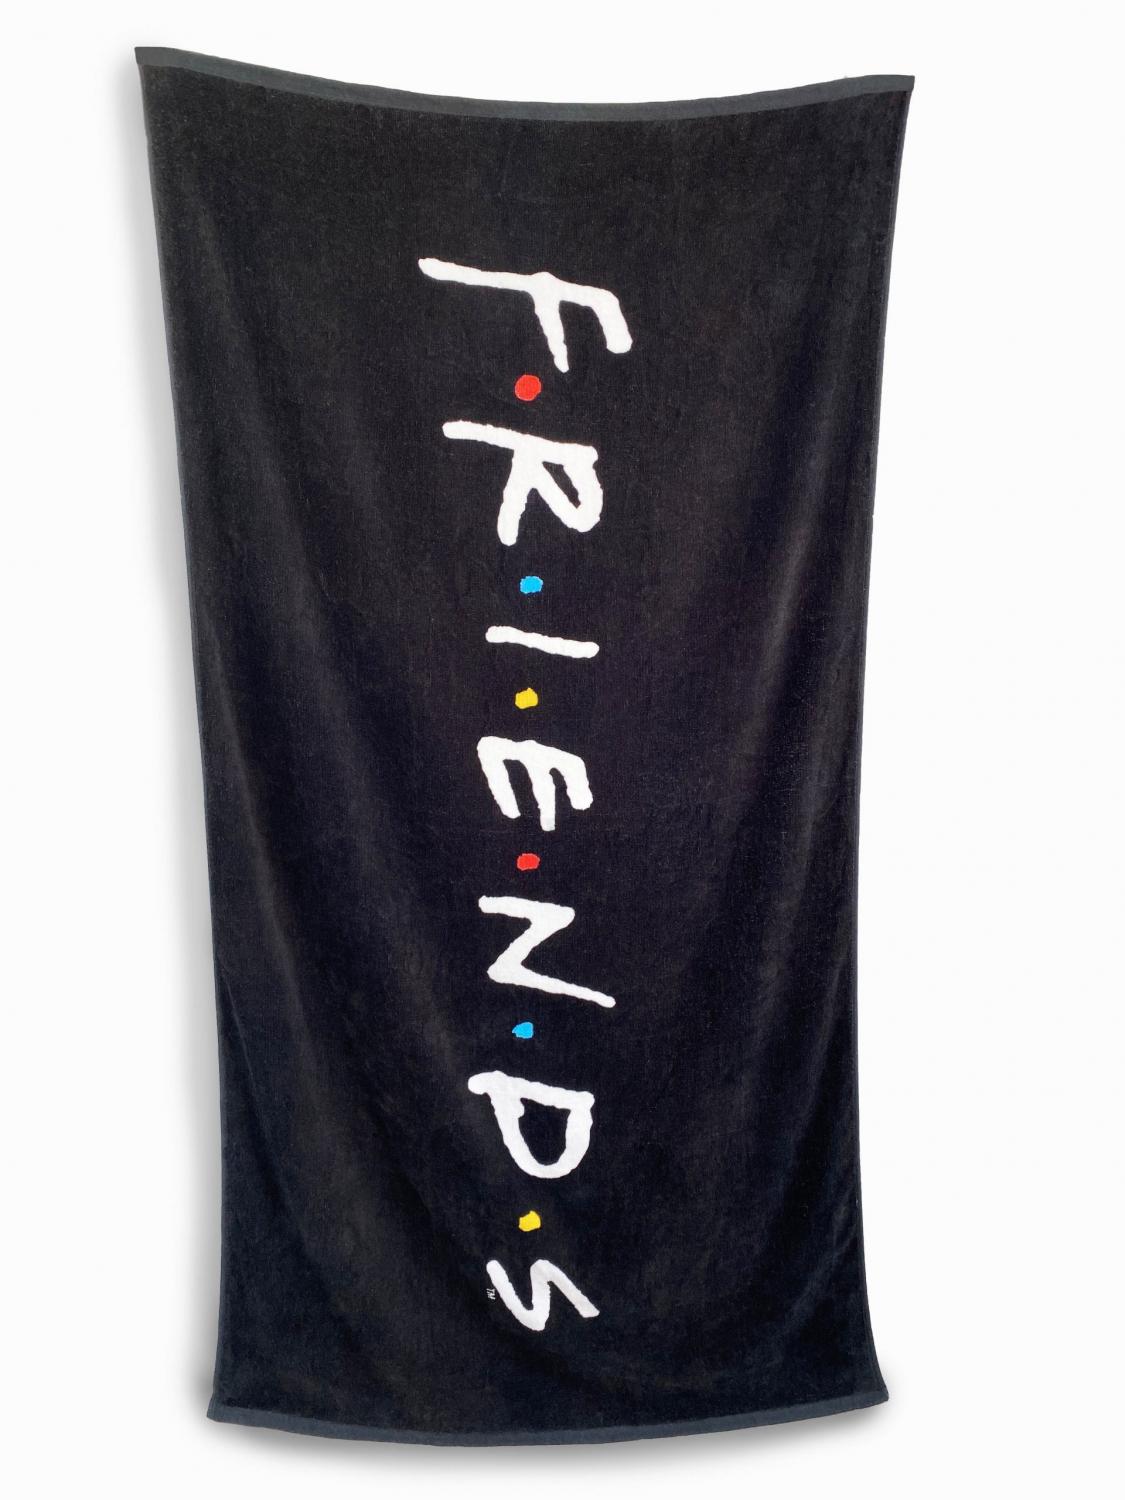 Friends Logo Towel 75cm x 150cm